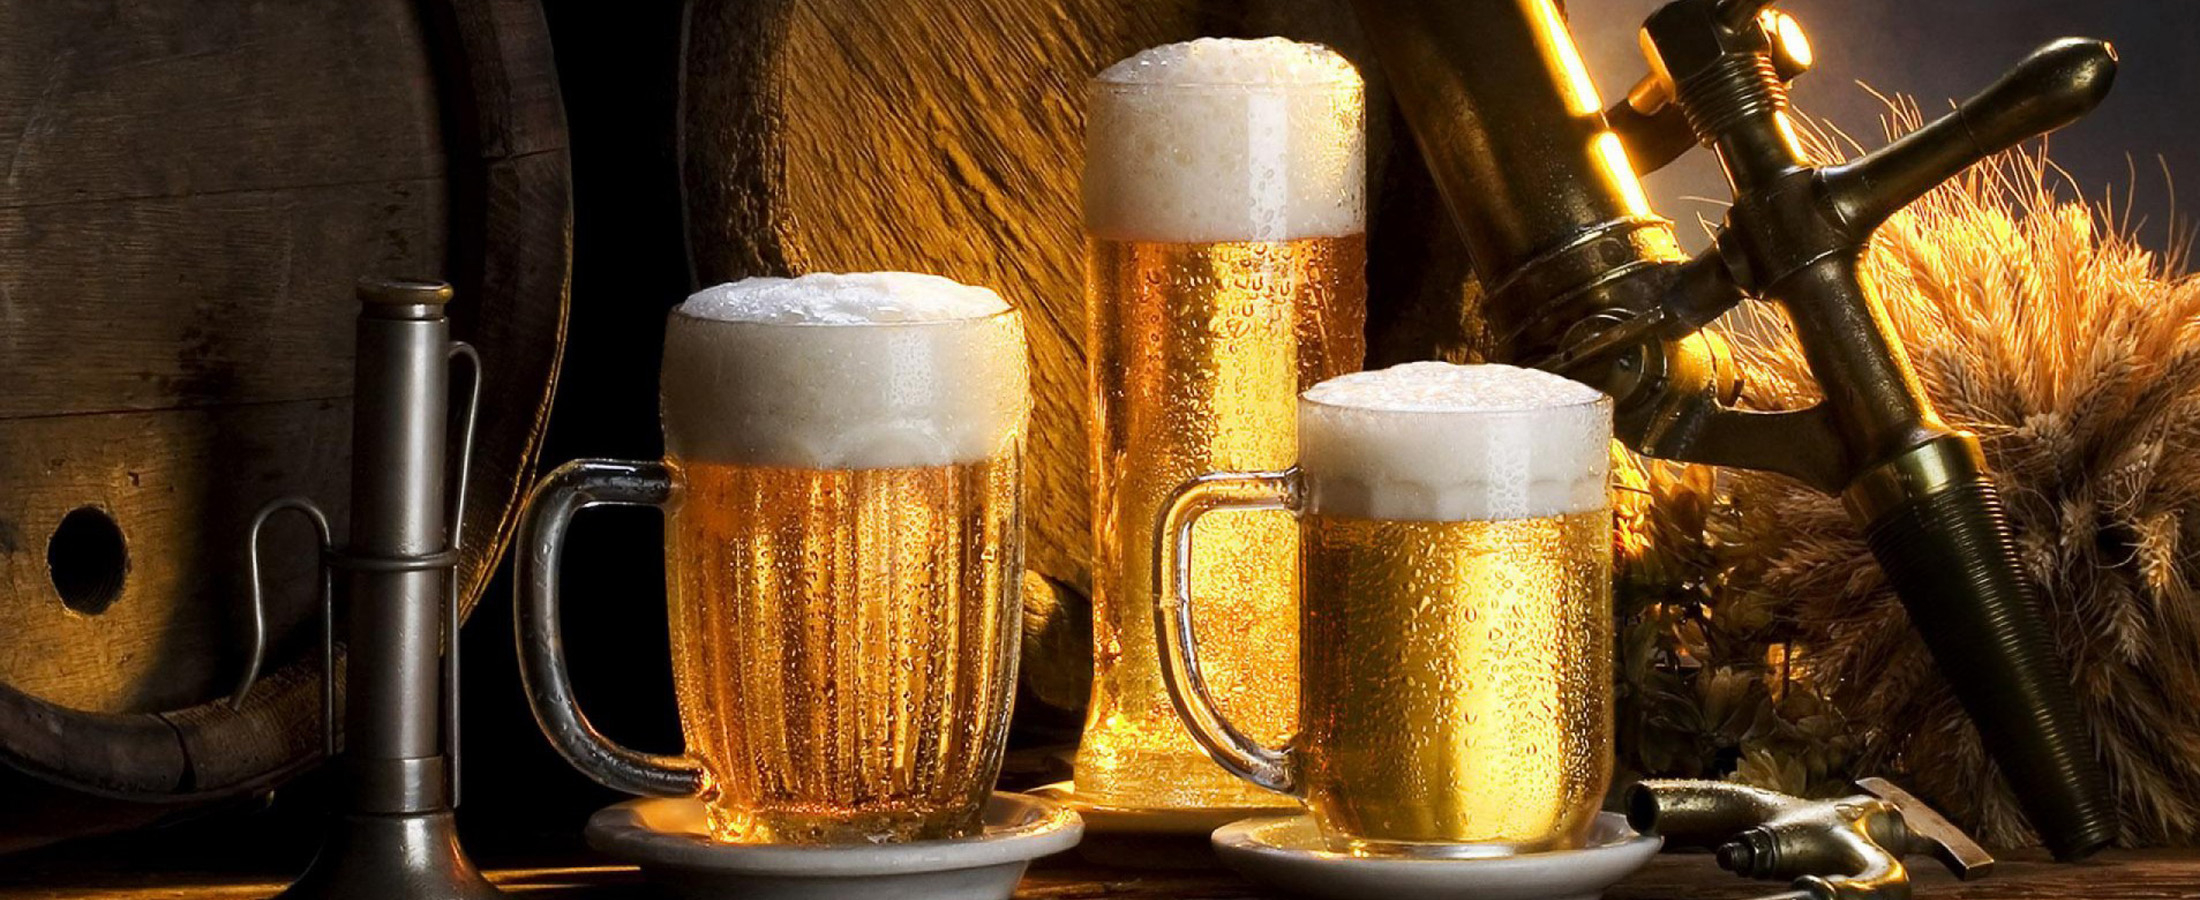 10 φανταστικές χρήσεις της μπύρας που πιθανότατα δεν γνωρίζατε!